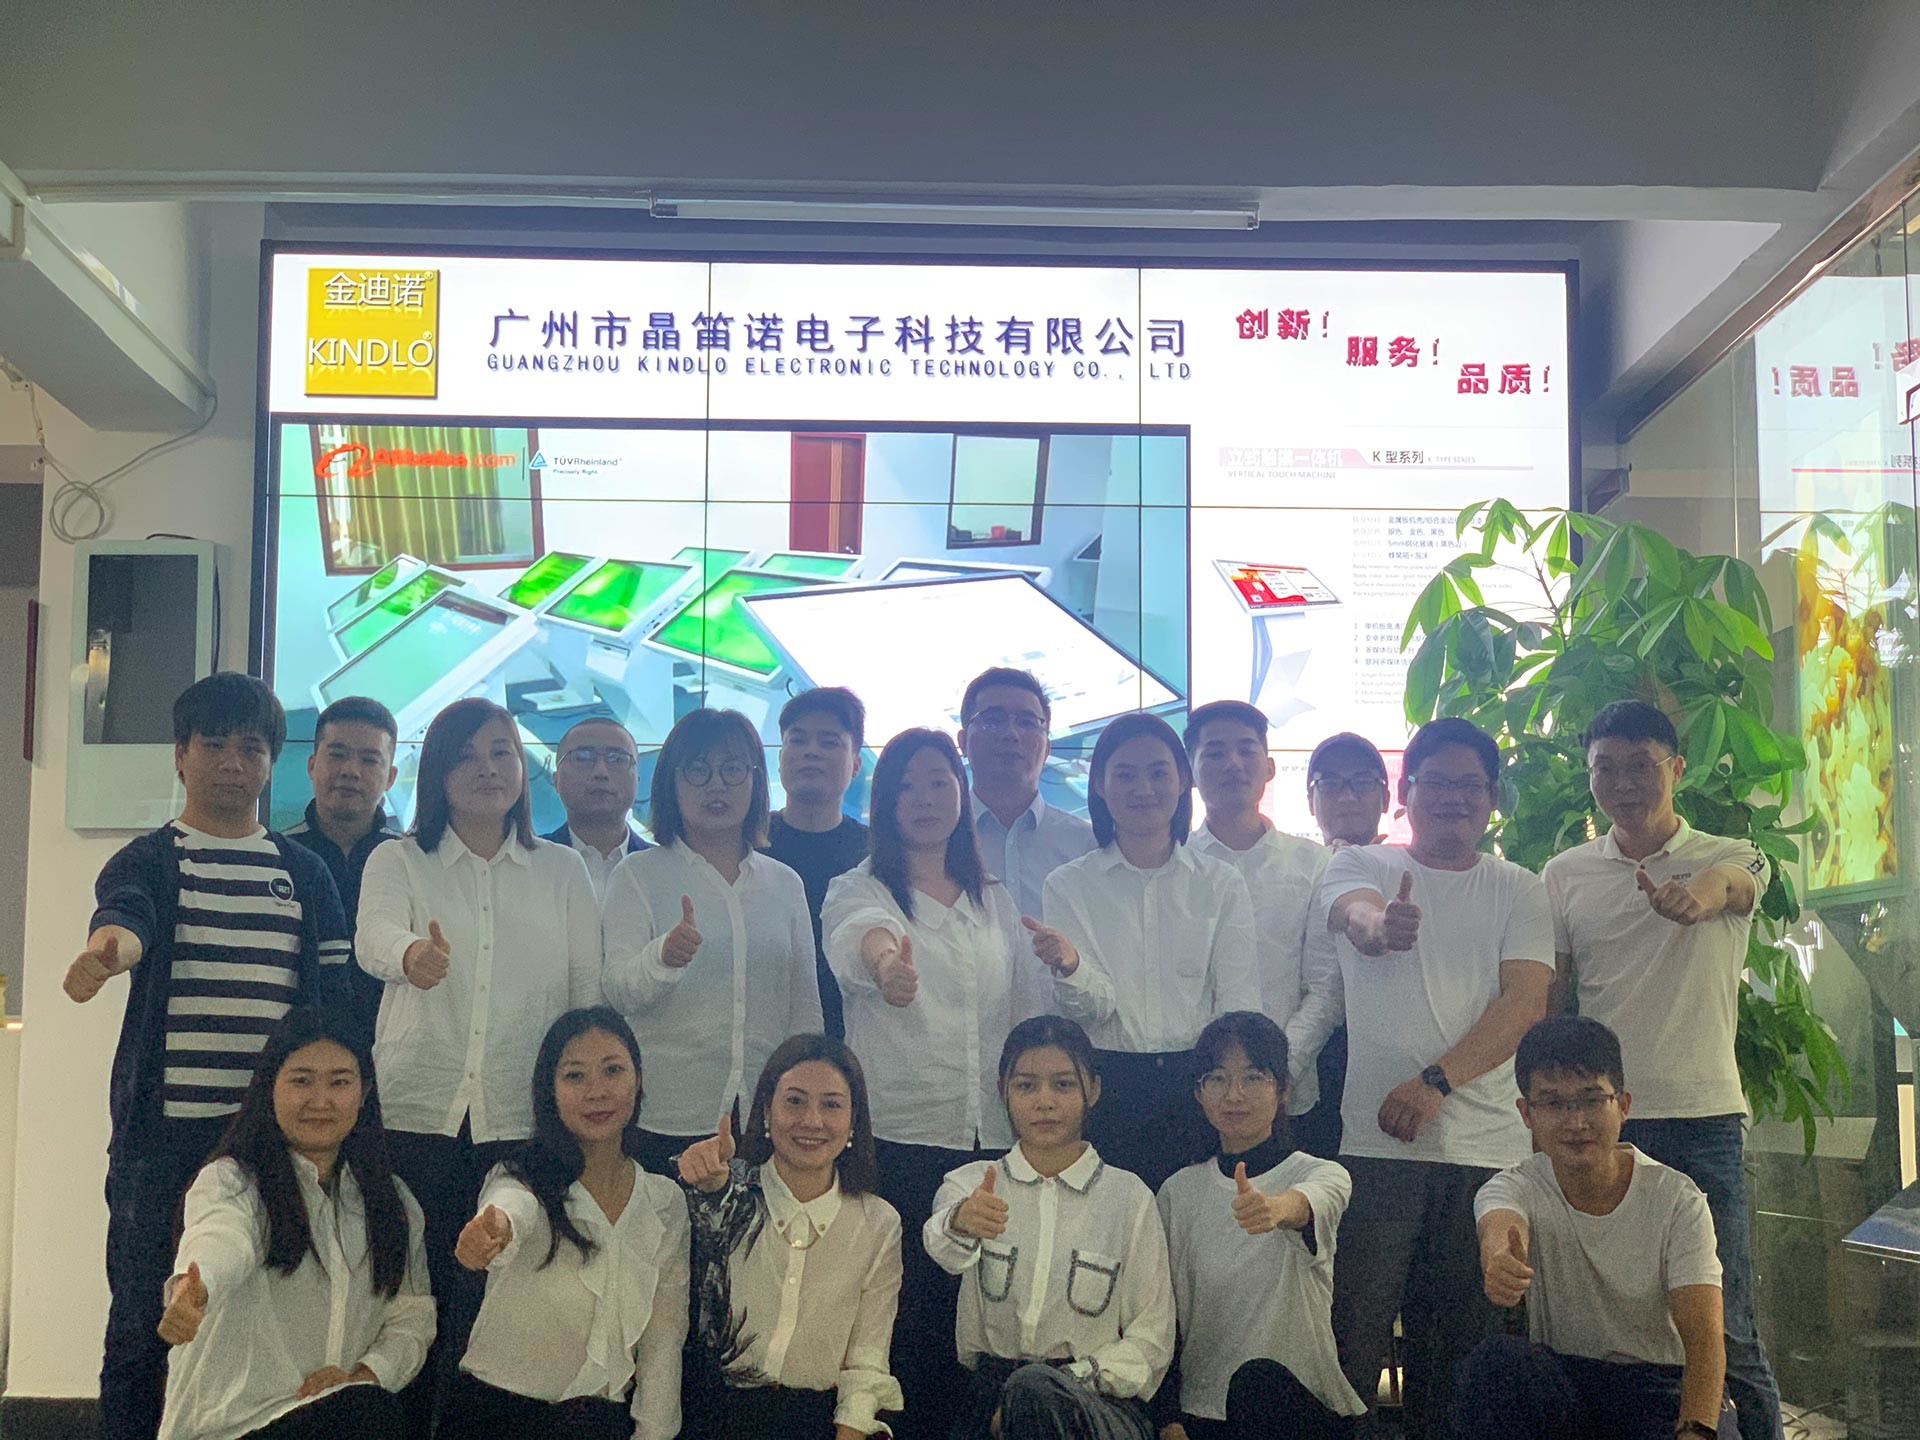 China Guangzhou Jingdinuo Electronic Technology Co., Ltd. company profile